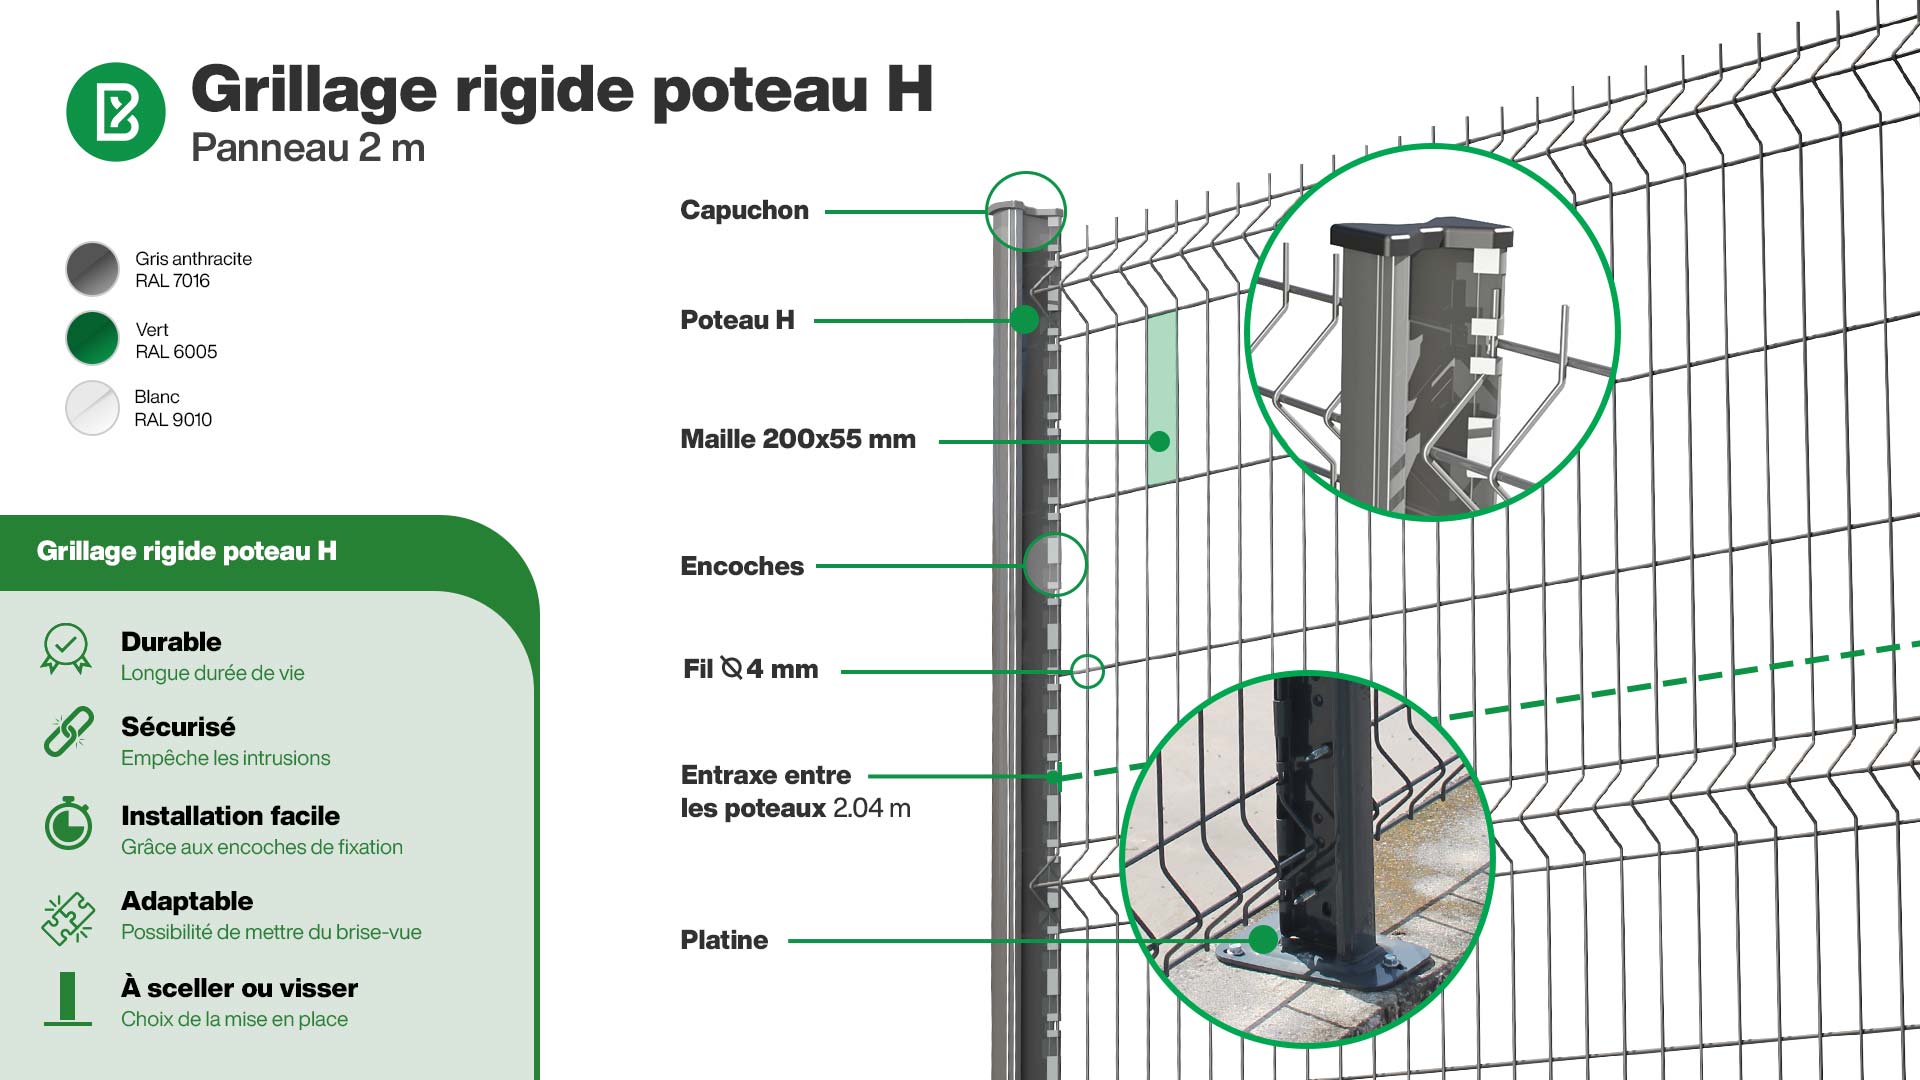 Grillage rigide : Infographie d'un kit de grillage rigide poteaux H à encoches